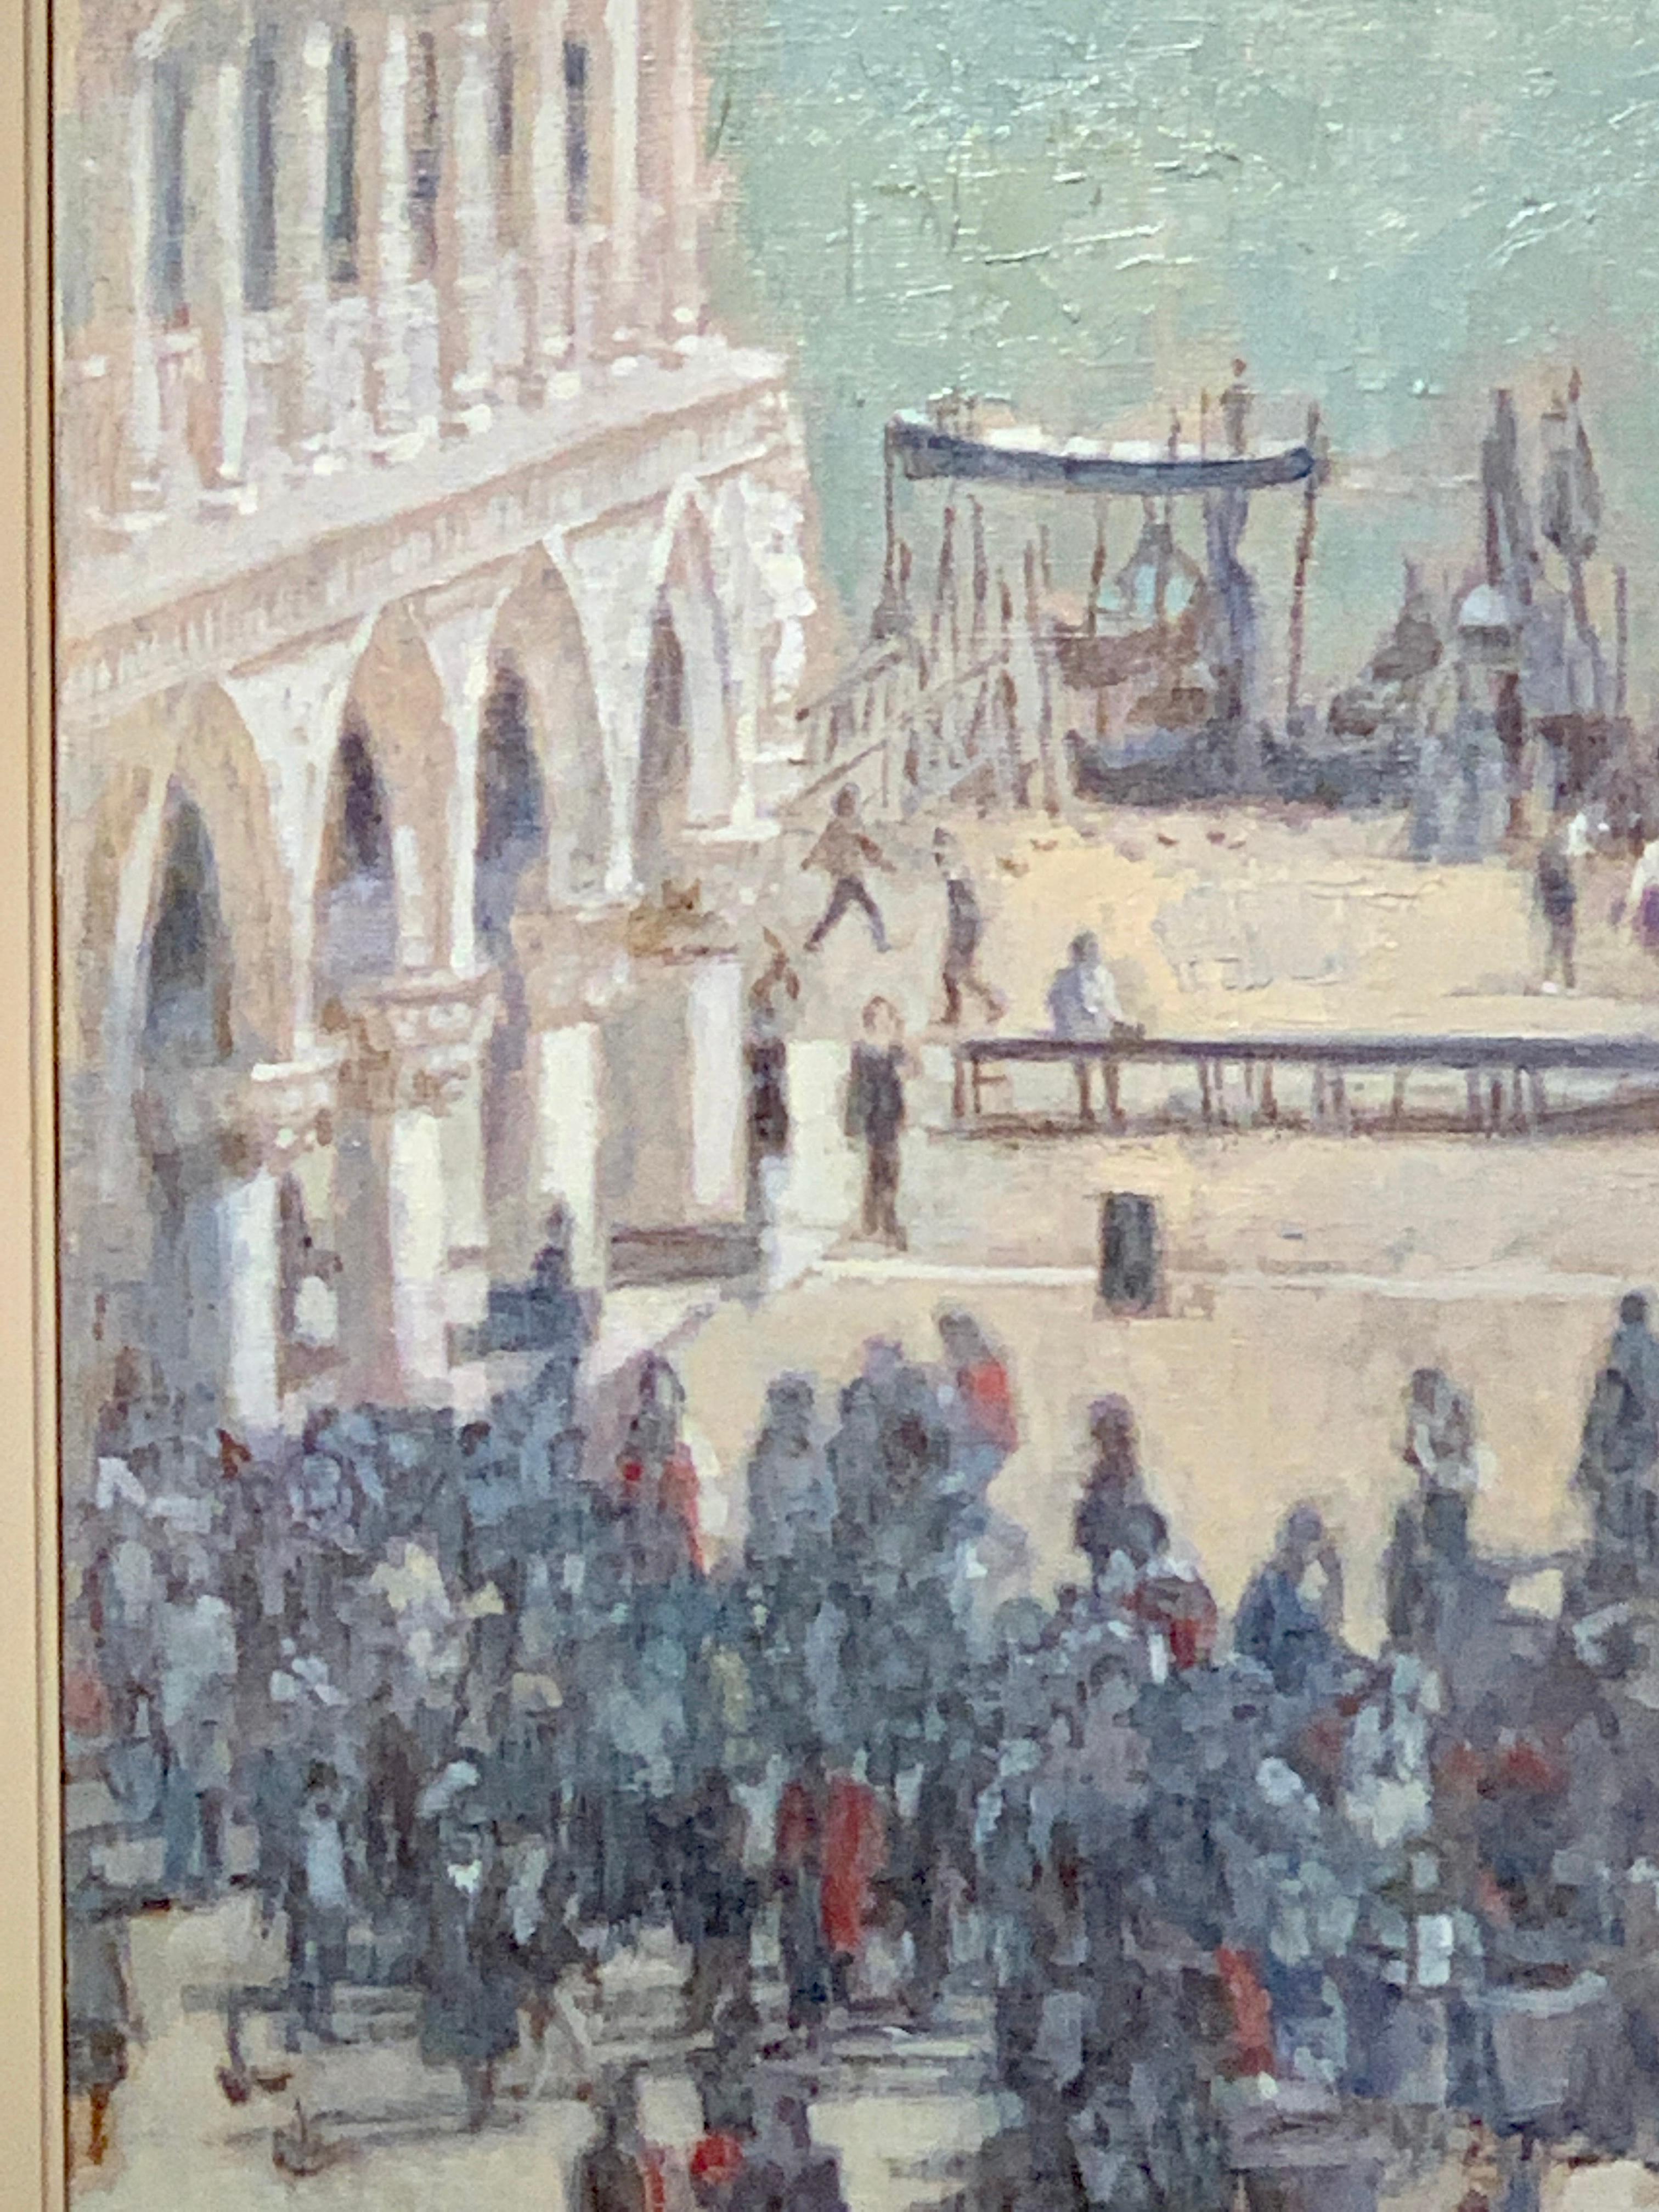 Wunderschöne impressionistische Ansicht des Markusplatzes in Venedig.

Pam Masco war eine Amerikanerin aus Massachusetts und Absolventin der School of the Boston Museum of Fine Arts (1976).  Sie war mit dem englischen Künstler John Heseltine